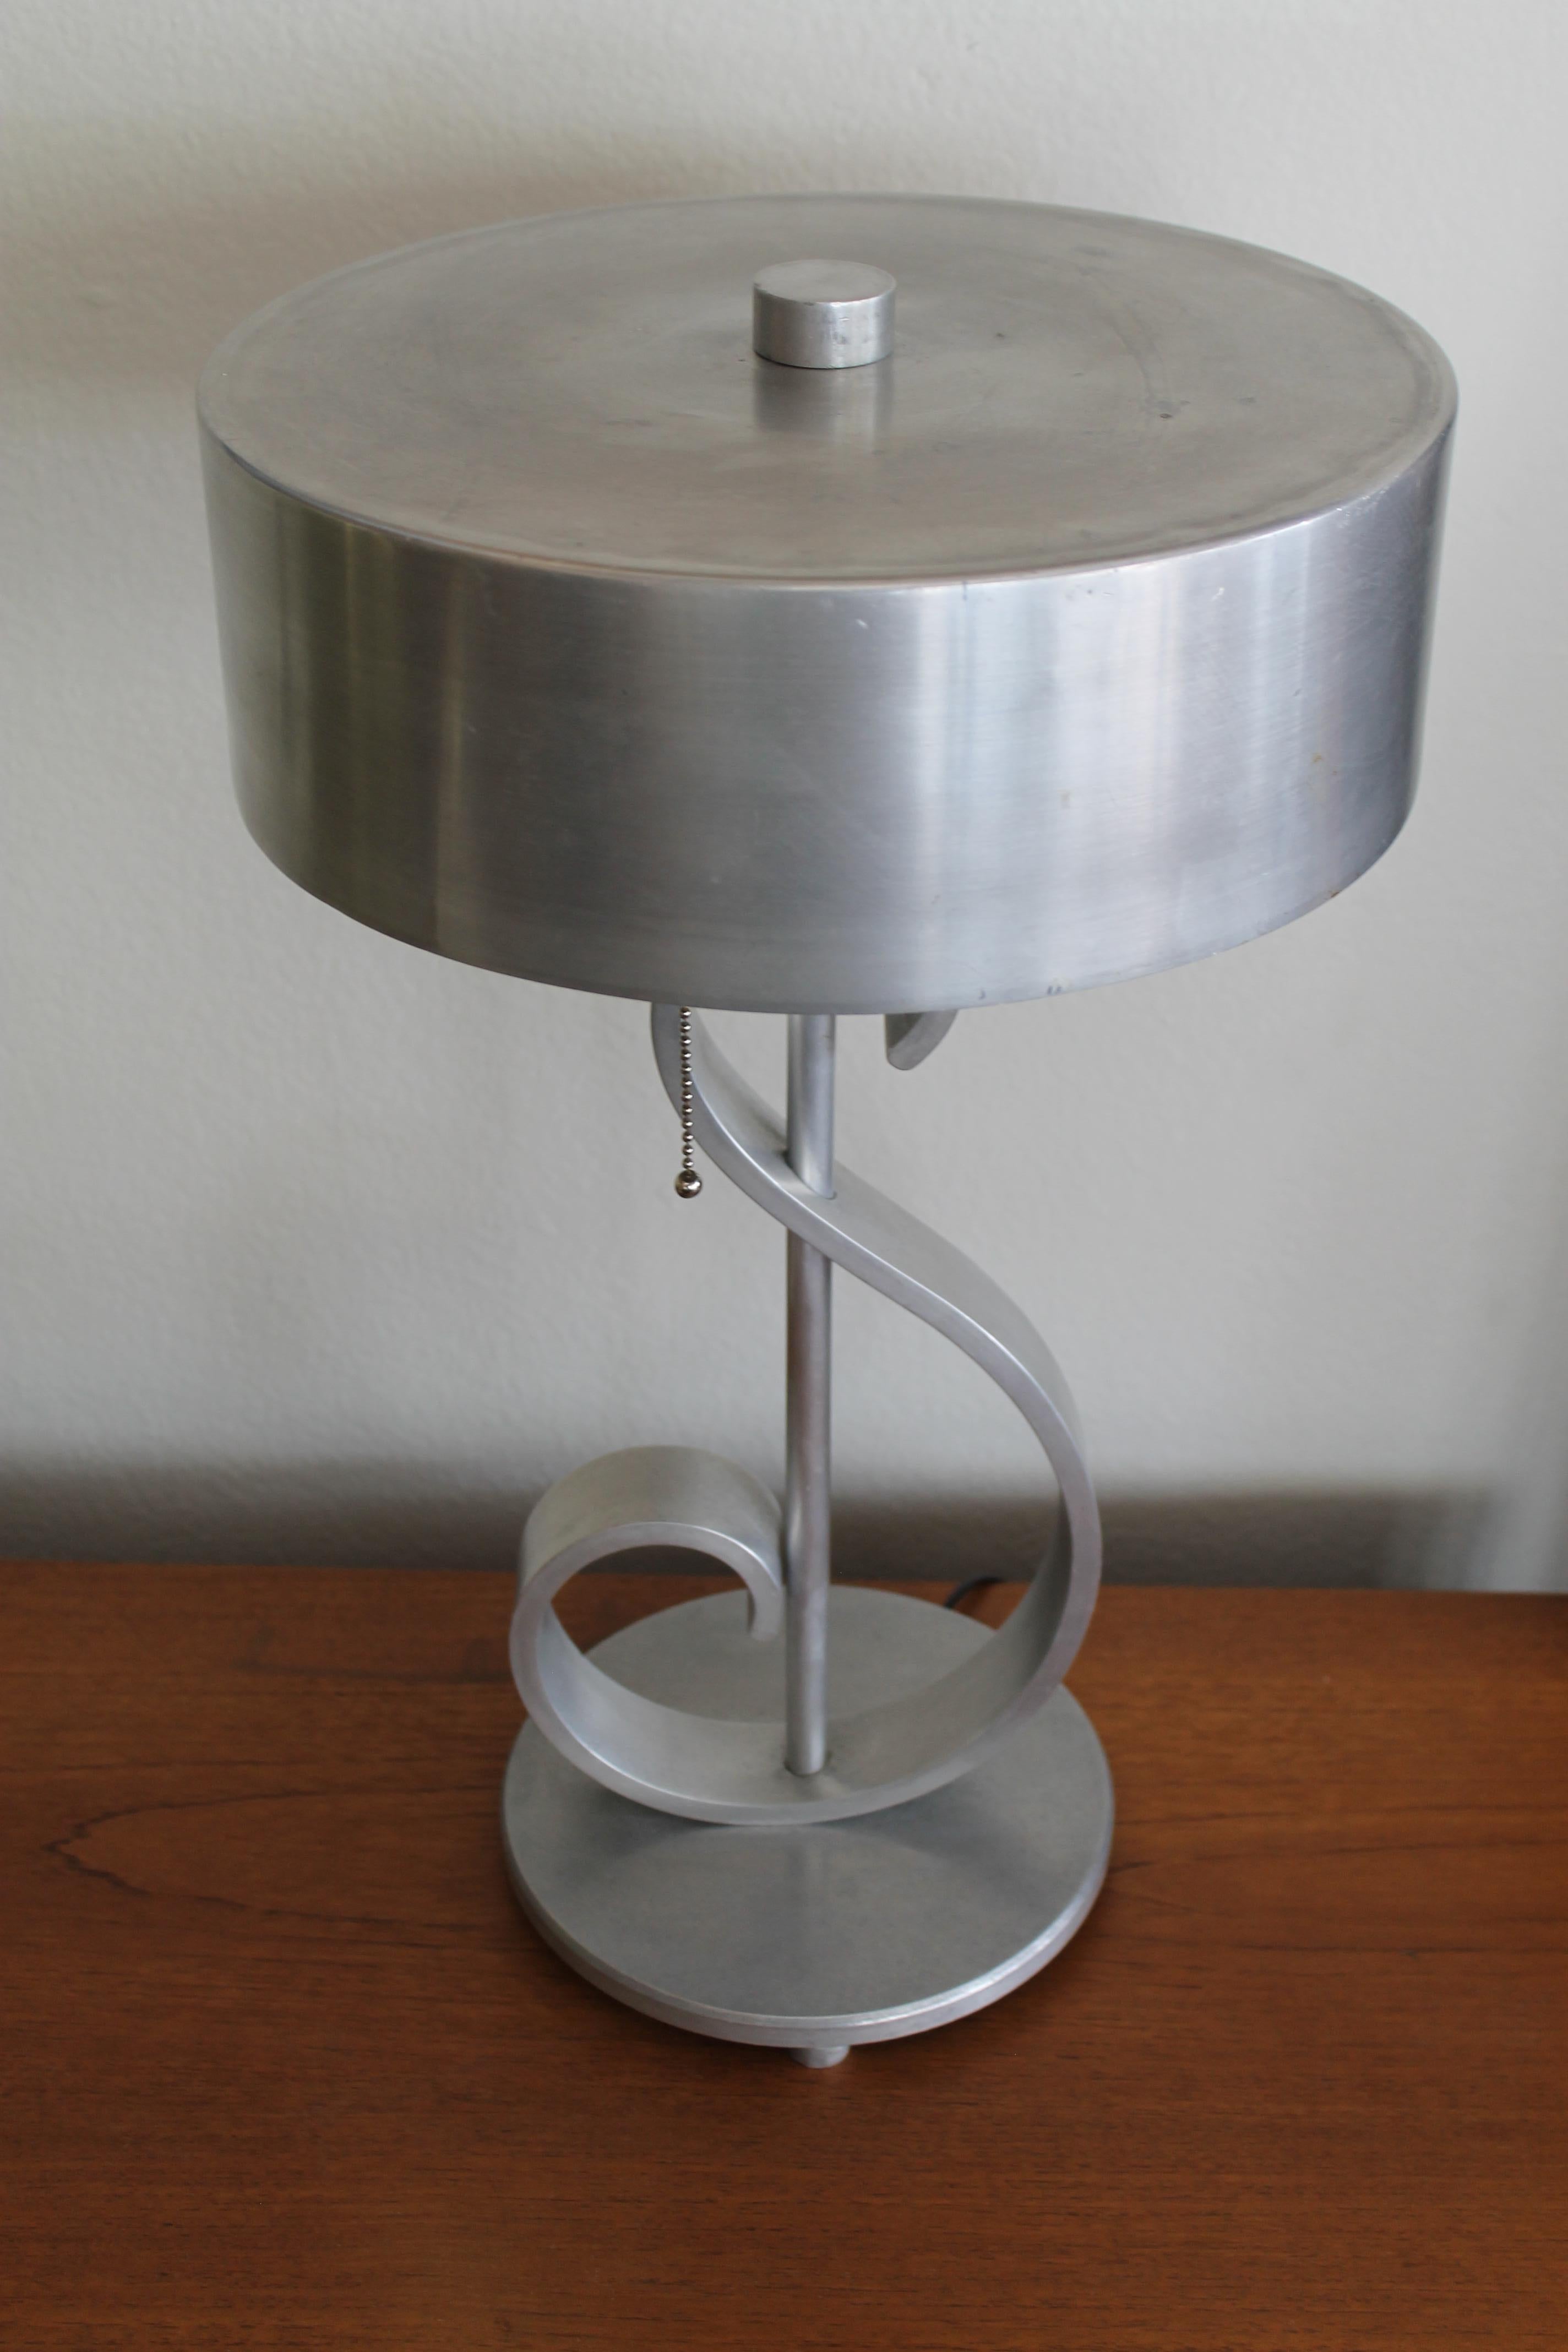 Musikalische Tischlampe aus Aluminium mit originalem Lampenschirm und Endstück. Die Lampe wurde professionell neu verkabelt und mit einem Schalter und Zugketten ausgestattet. Die Lampe (mit Schirm) ist 20,5